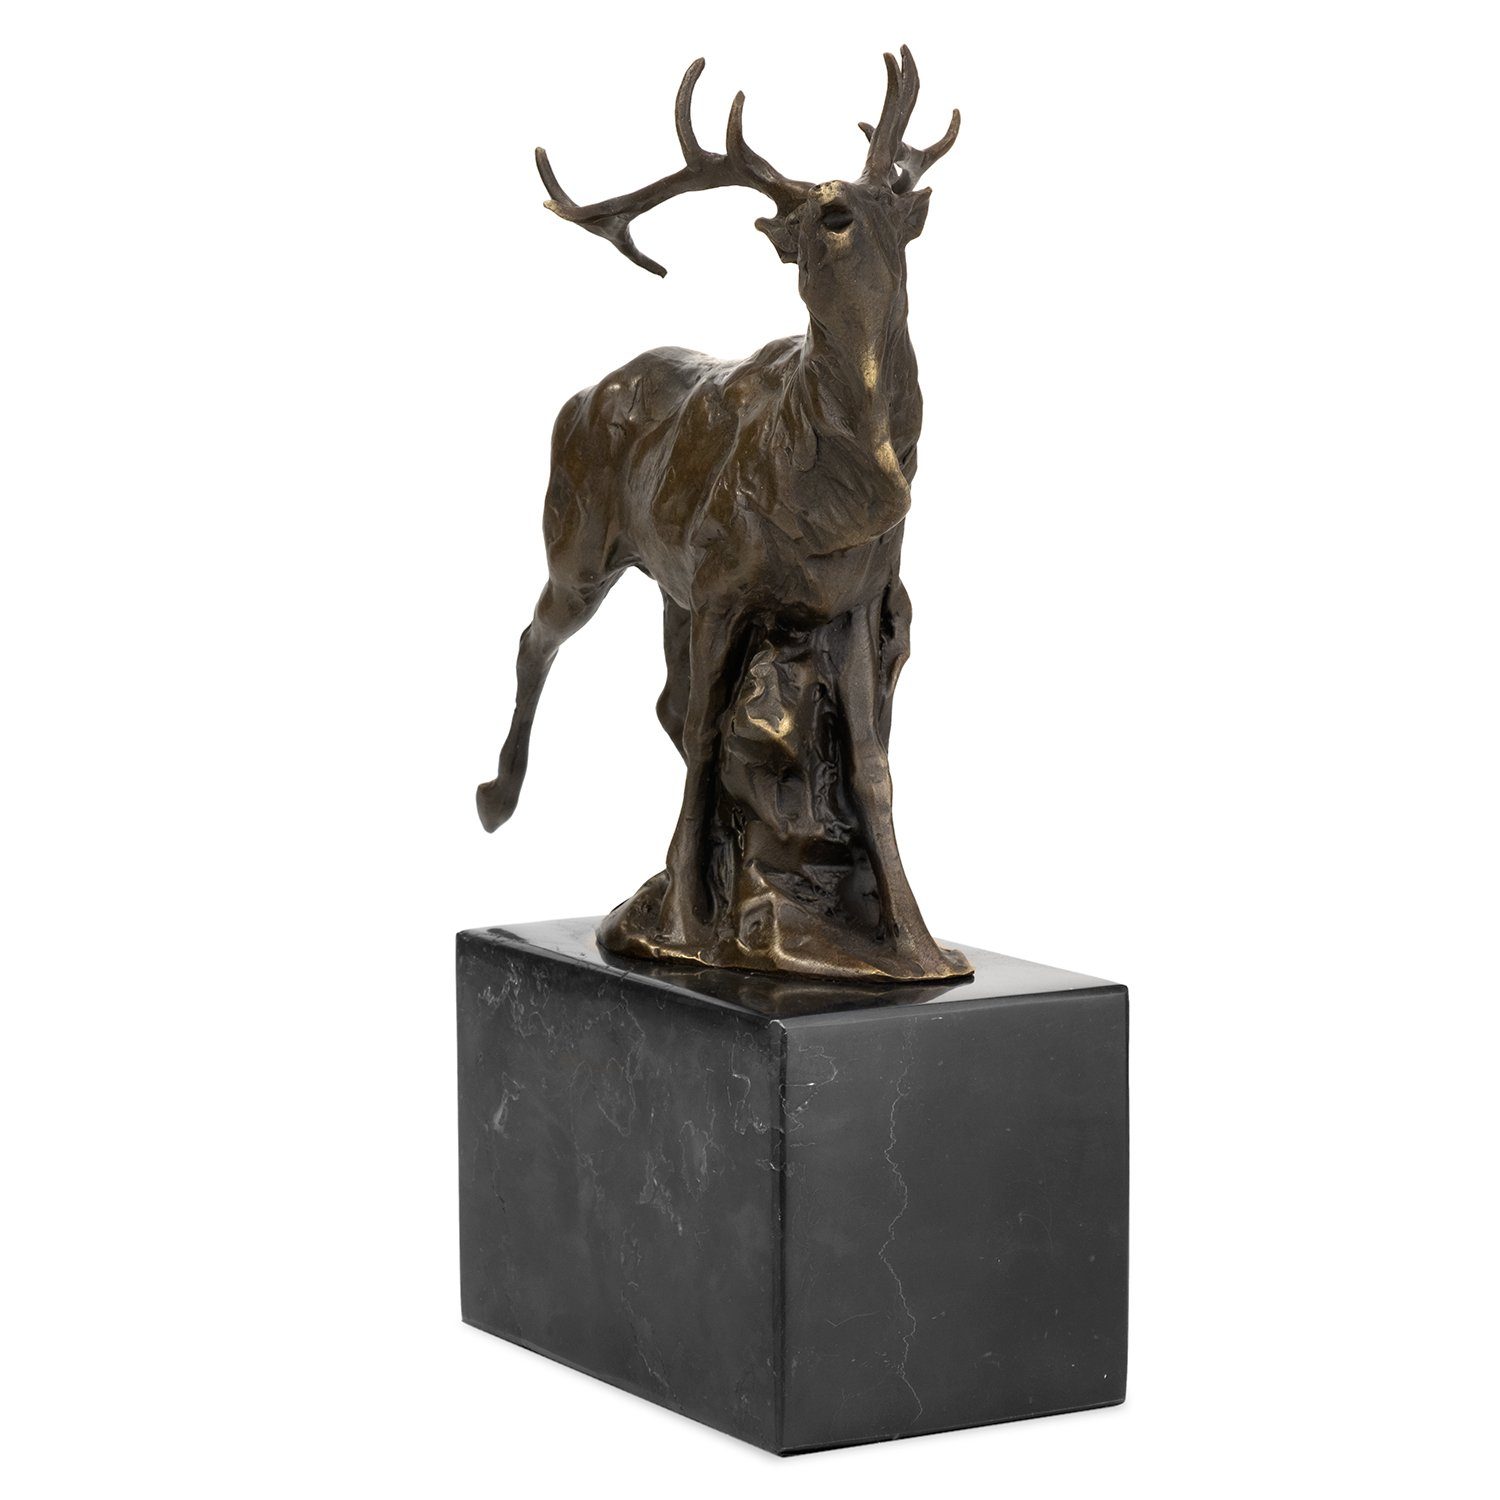 Moritz Skulptur Bronzefigur Rotwild, Vitrine Figuren Skulptur Schreibtisch Deko Bronzefigur für Regal